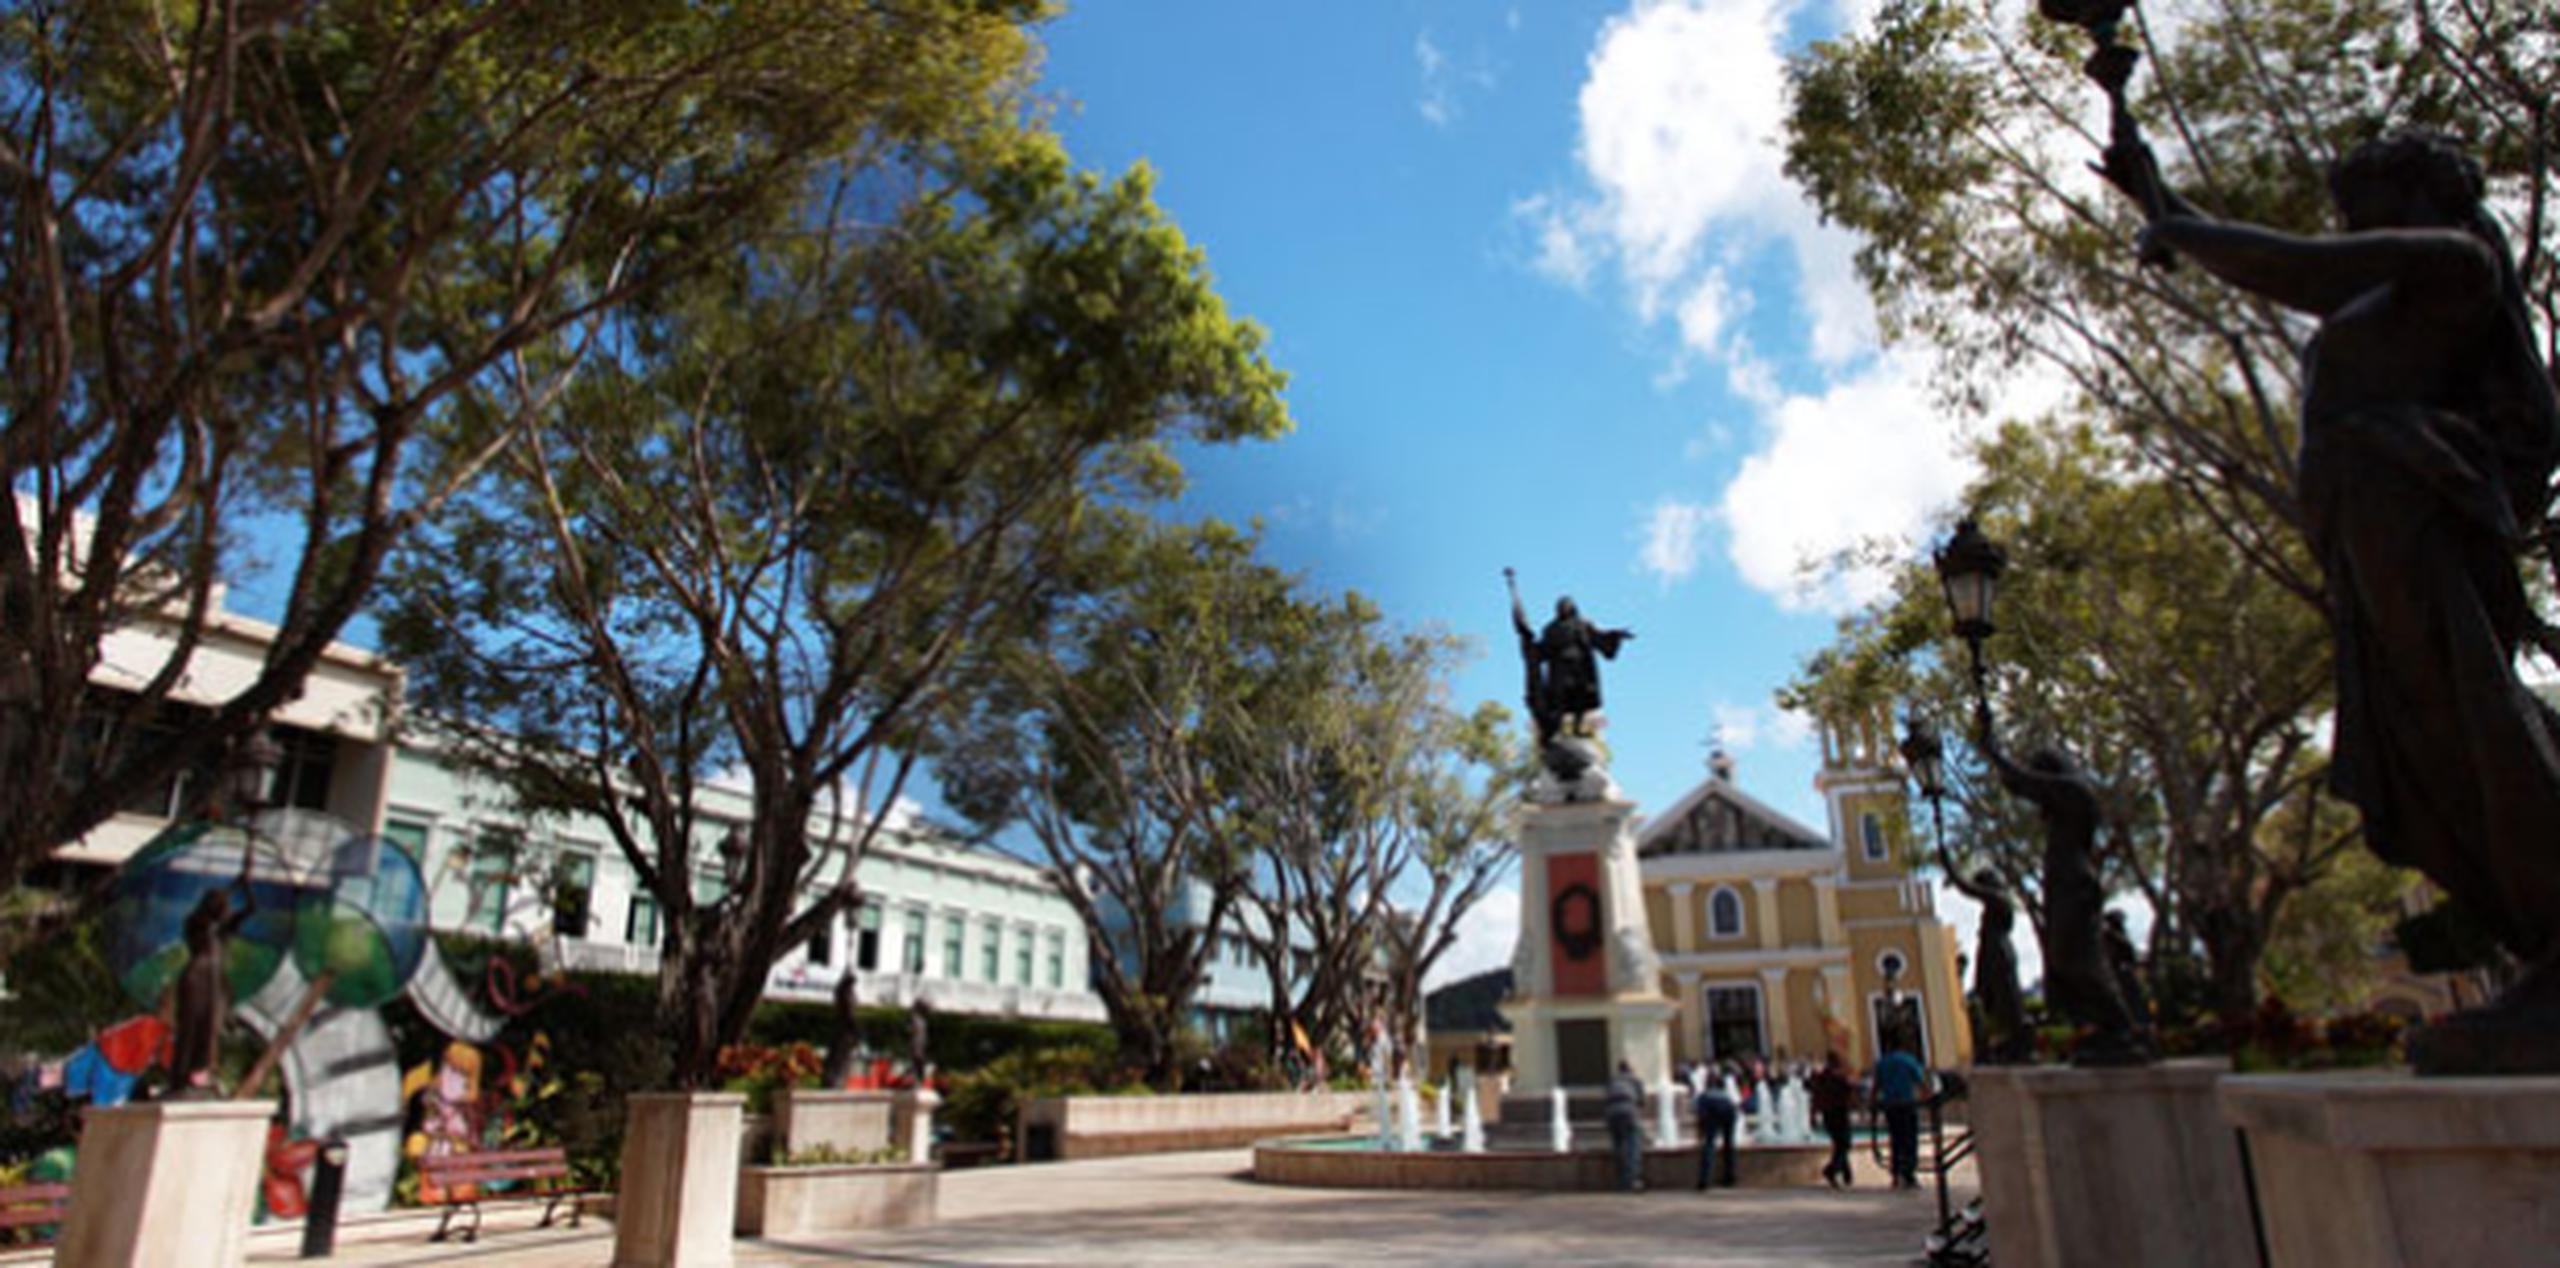 Esta iniciativa surgió a raíz de las actividades planificadas por la ciudad de Mayagüez, tras su elección como Capital Americana de la Cultura 2015. (Archivo)